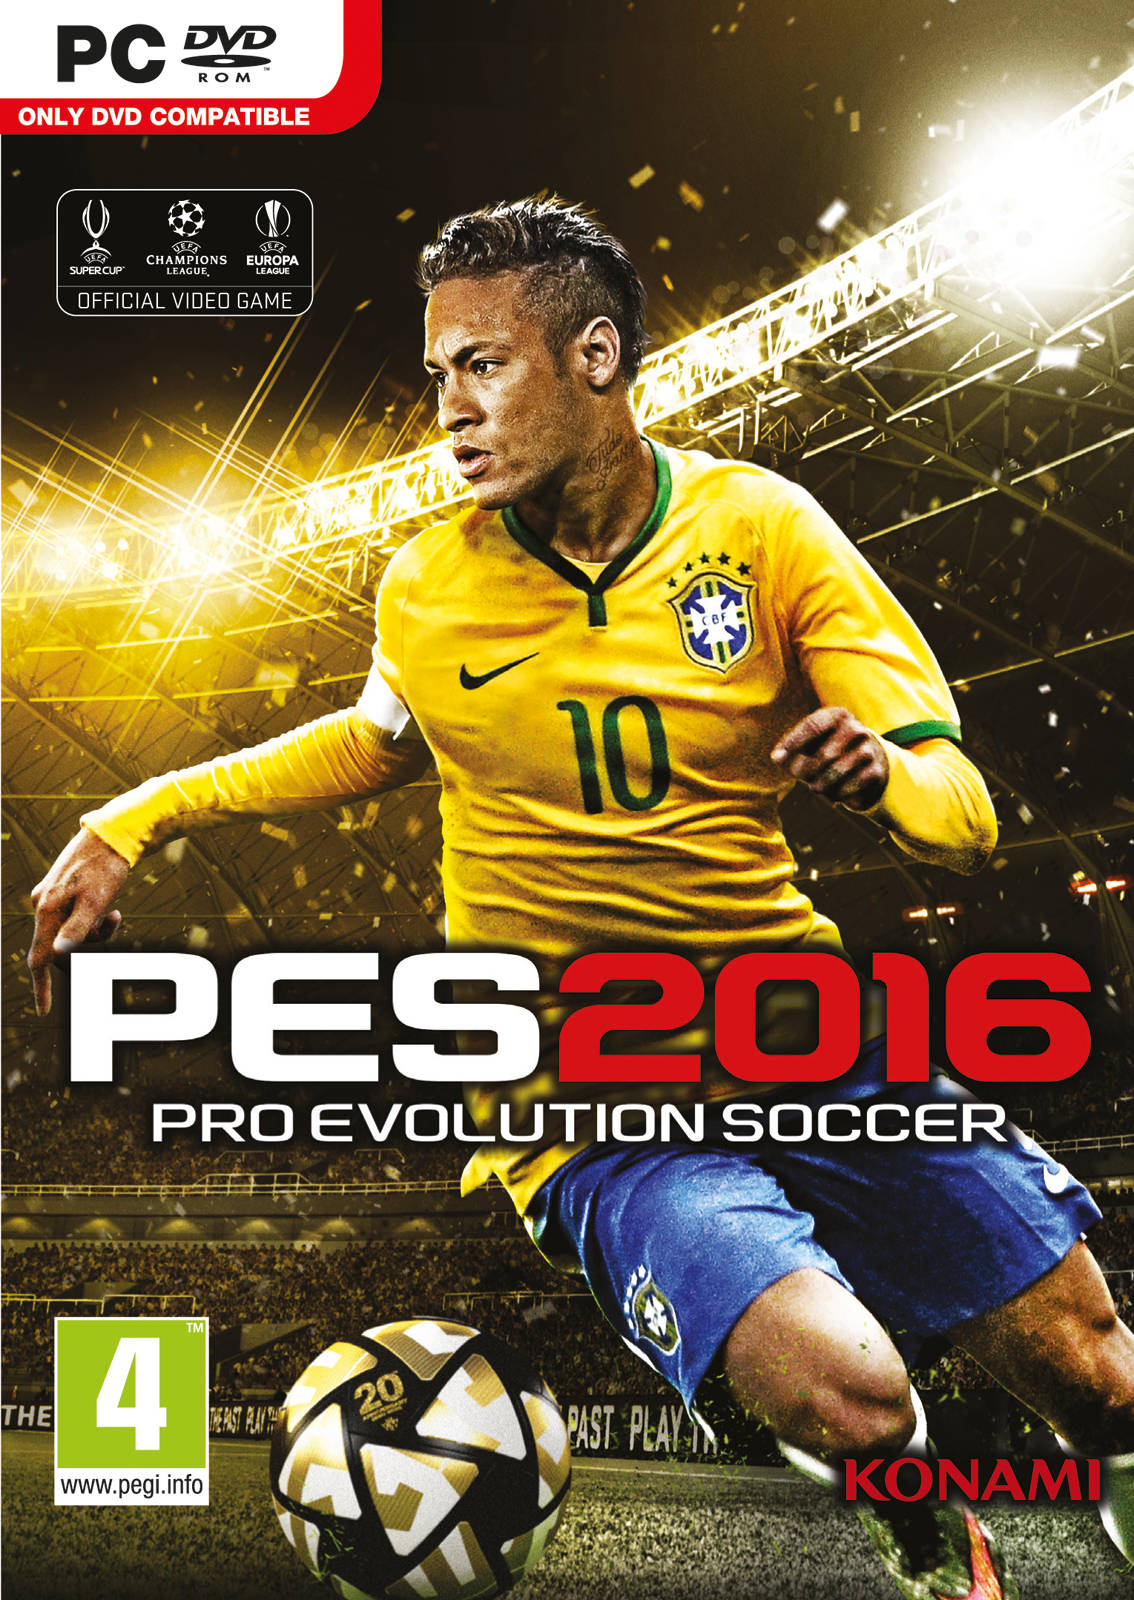 PC] Pro Evolution Soccer 2016 Full Version (RELOADED) + Crack ...